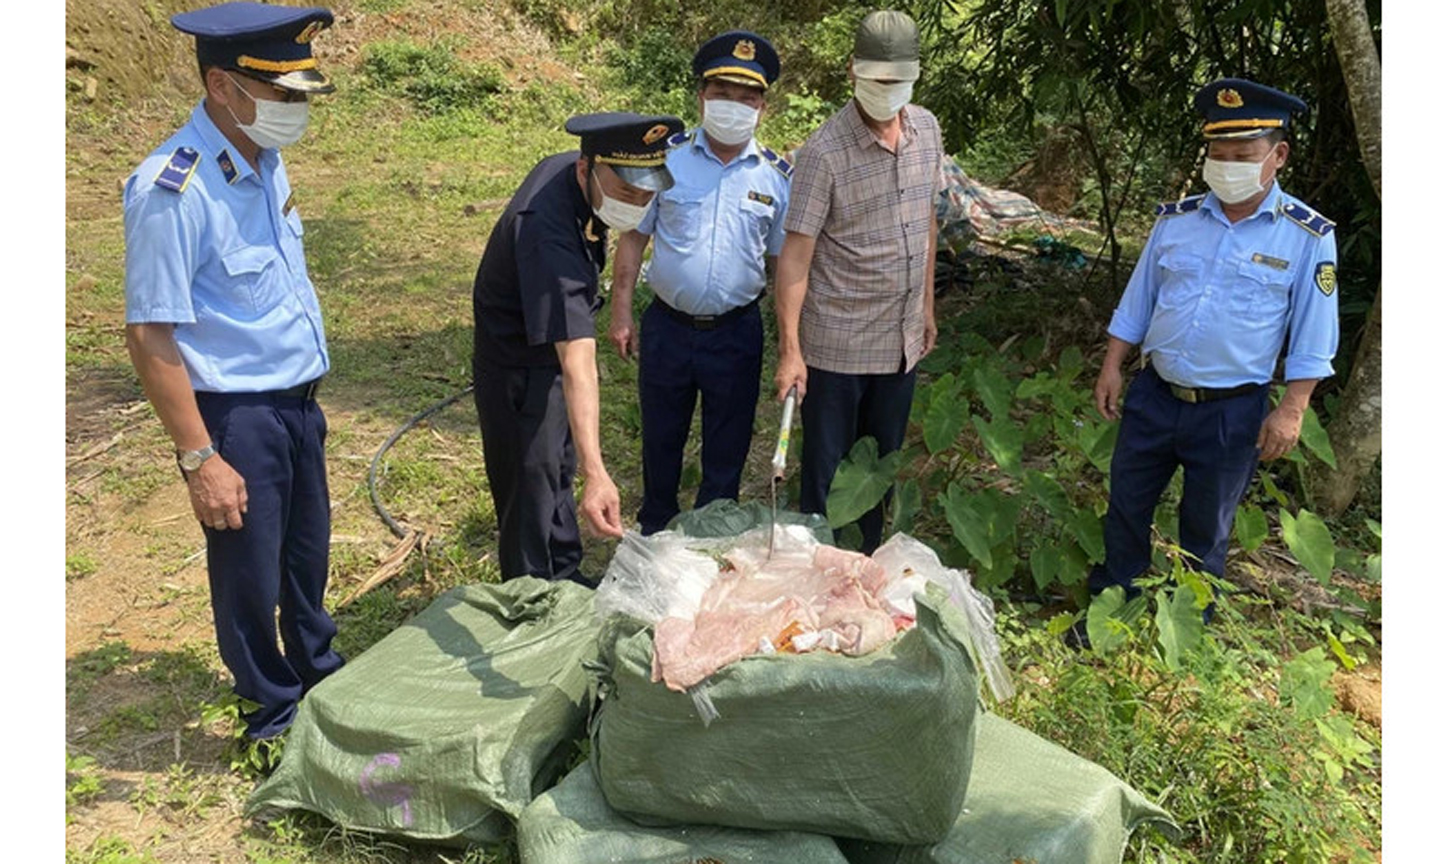 Các lực lượng chức năng huyện Bình Liêu (Quảng Ninh) tổ chức tiêu hủy 550kg nầm lợn không rõ nguồn gốc, xuất xứ, bắt giữ hồi cuối tháng 4 vừa qua. Ảnh: Hoàng Gái